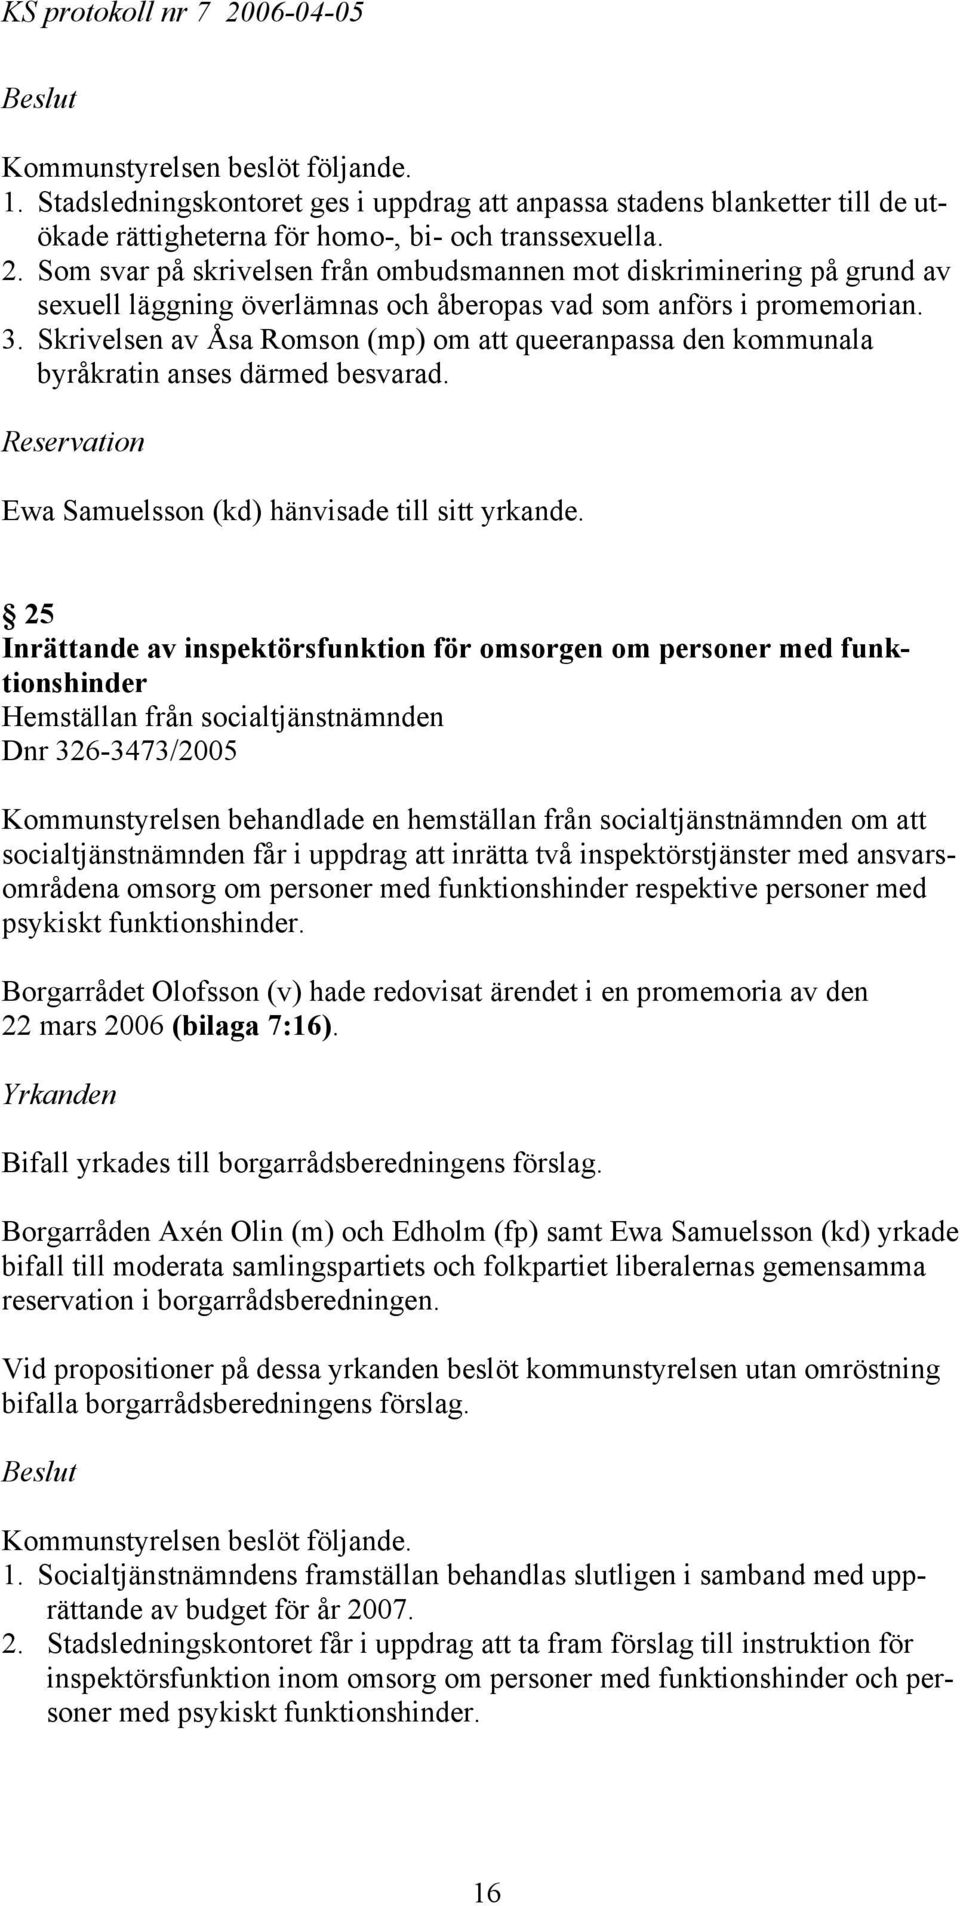 Skrivelsen av Åsa Romson (mp) om att queeranpassa den kommunala byråkratin anses därmed besvarad. Reservation Ewa Samuelsson (kd) hänvisade till sitt yrkande.